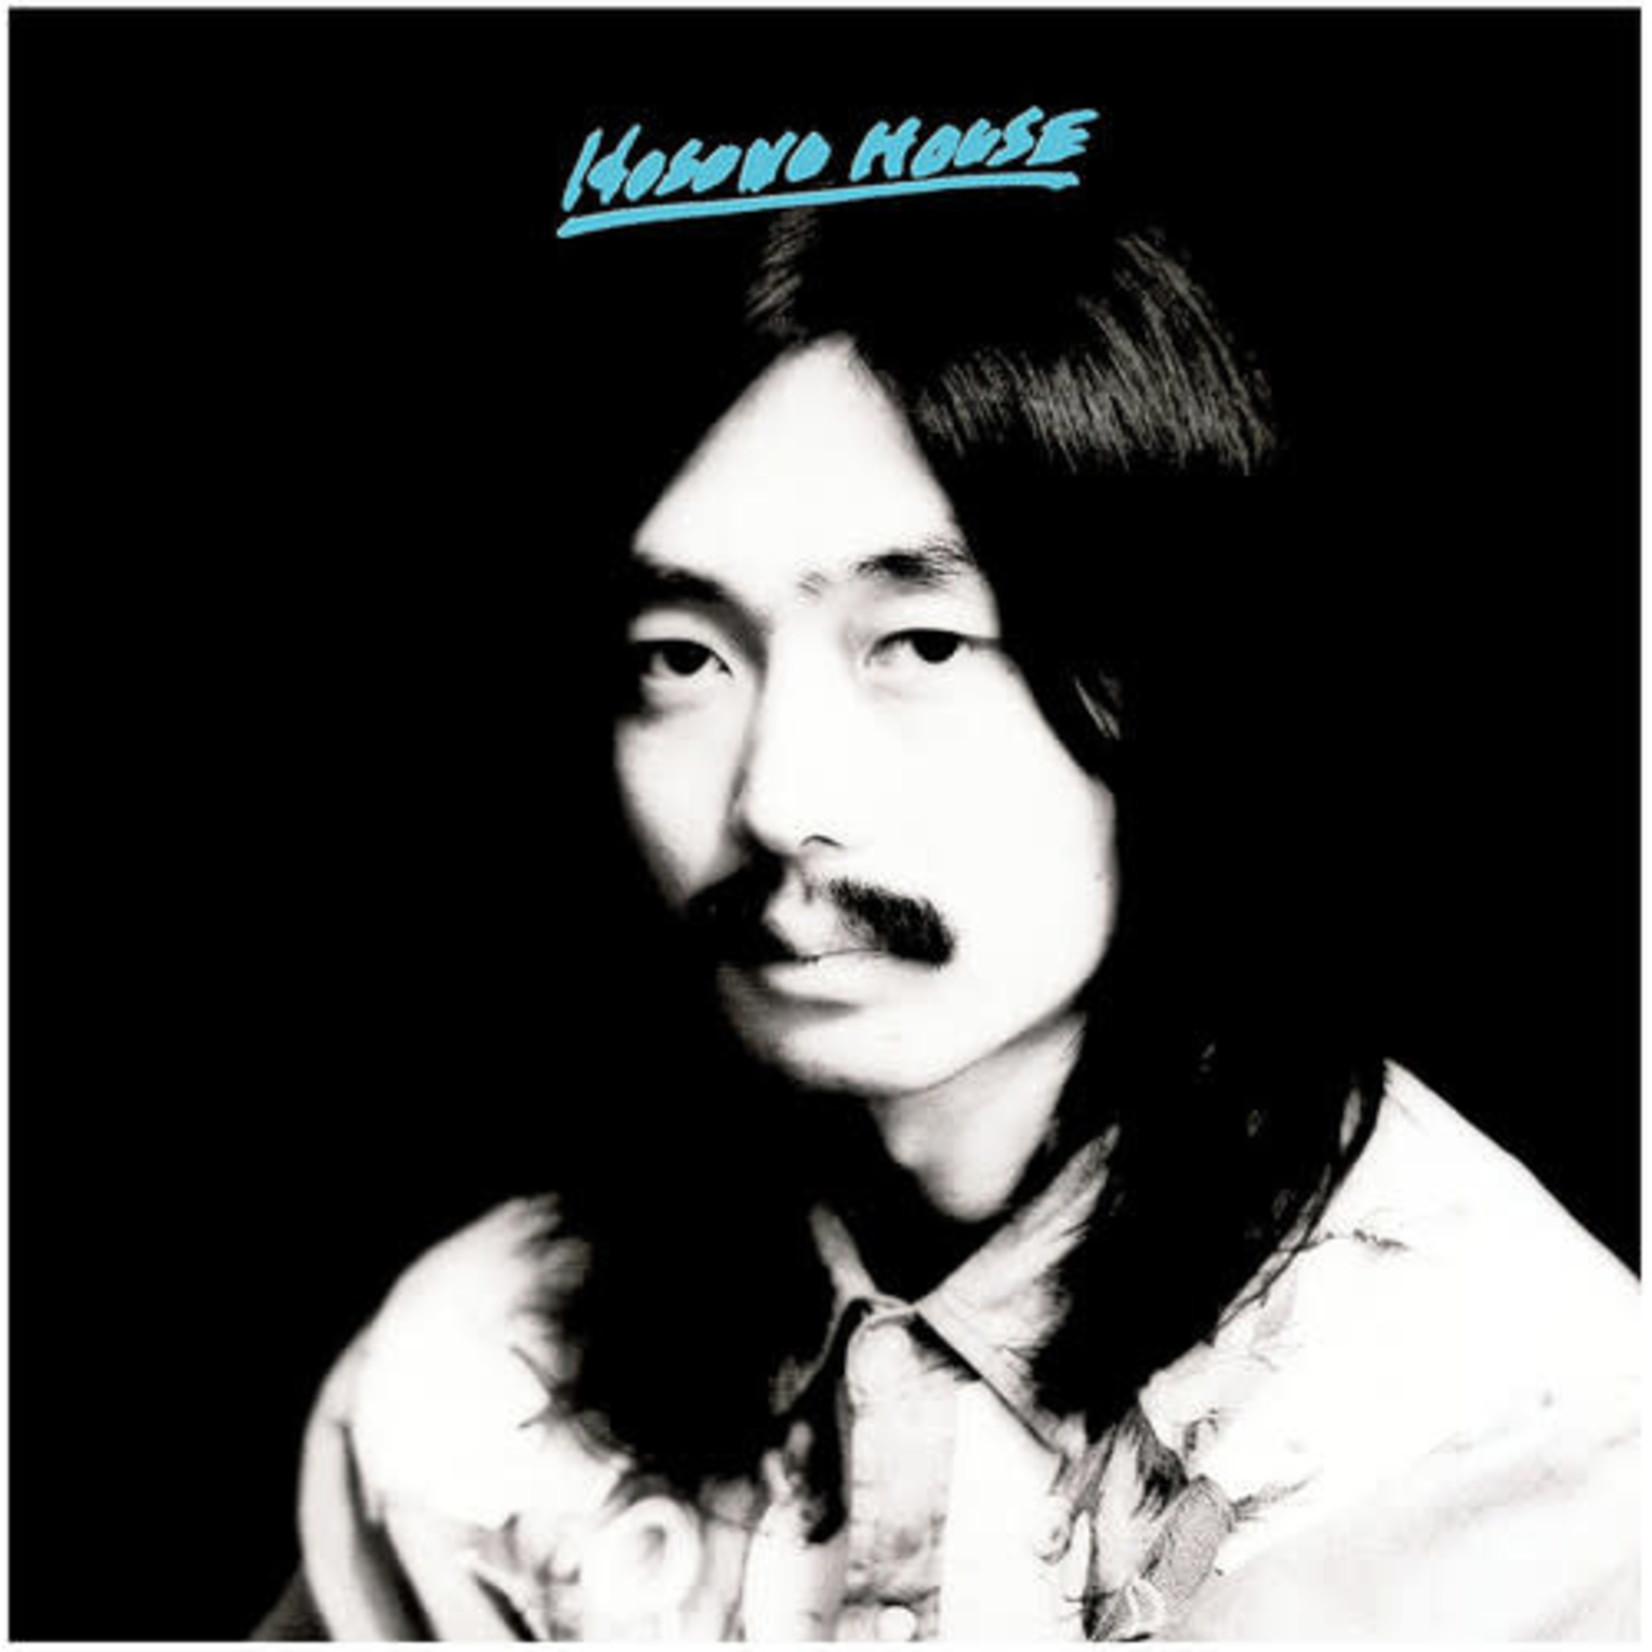 Light In The Attic Haruomi Hosono - Hosono House (LP)